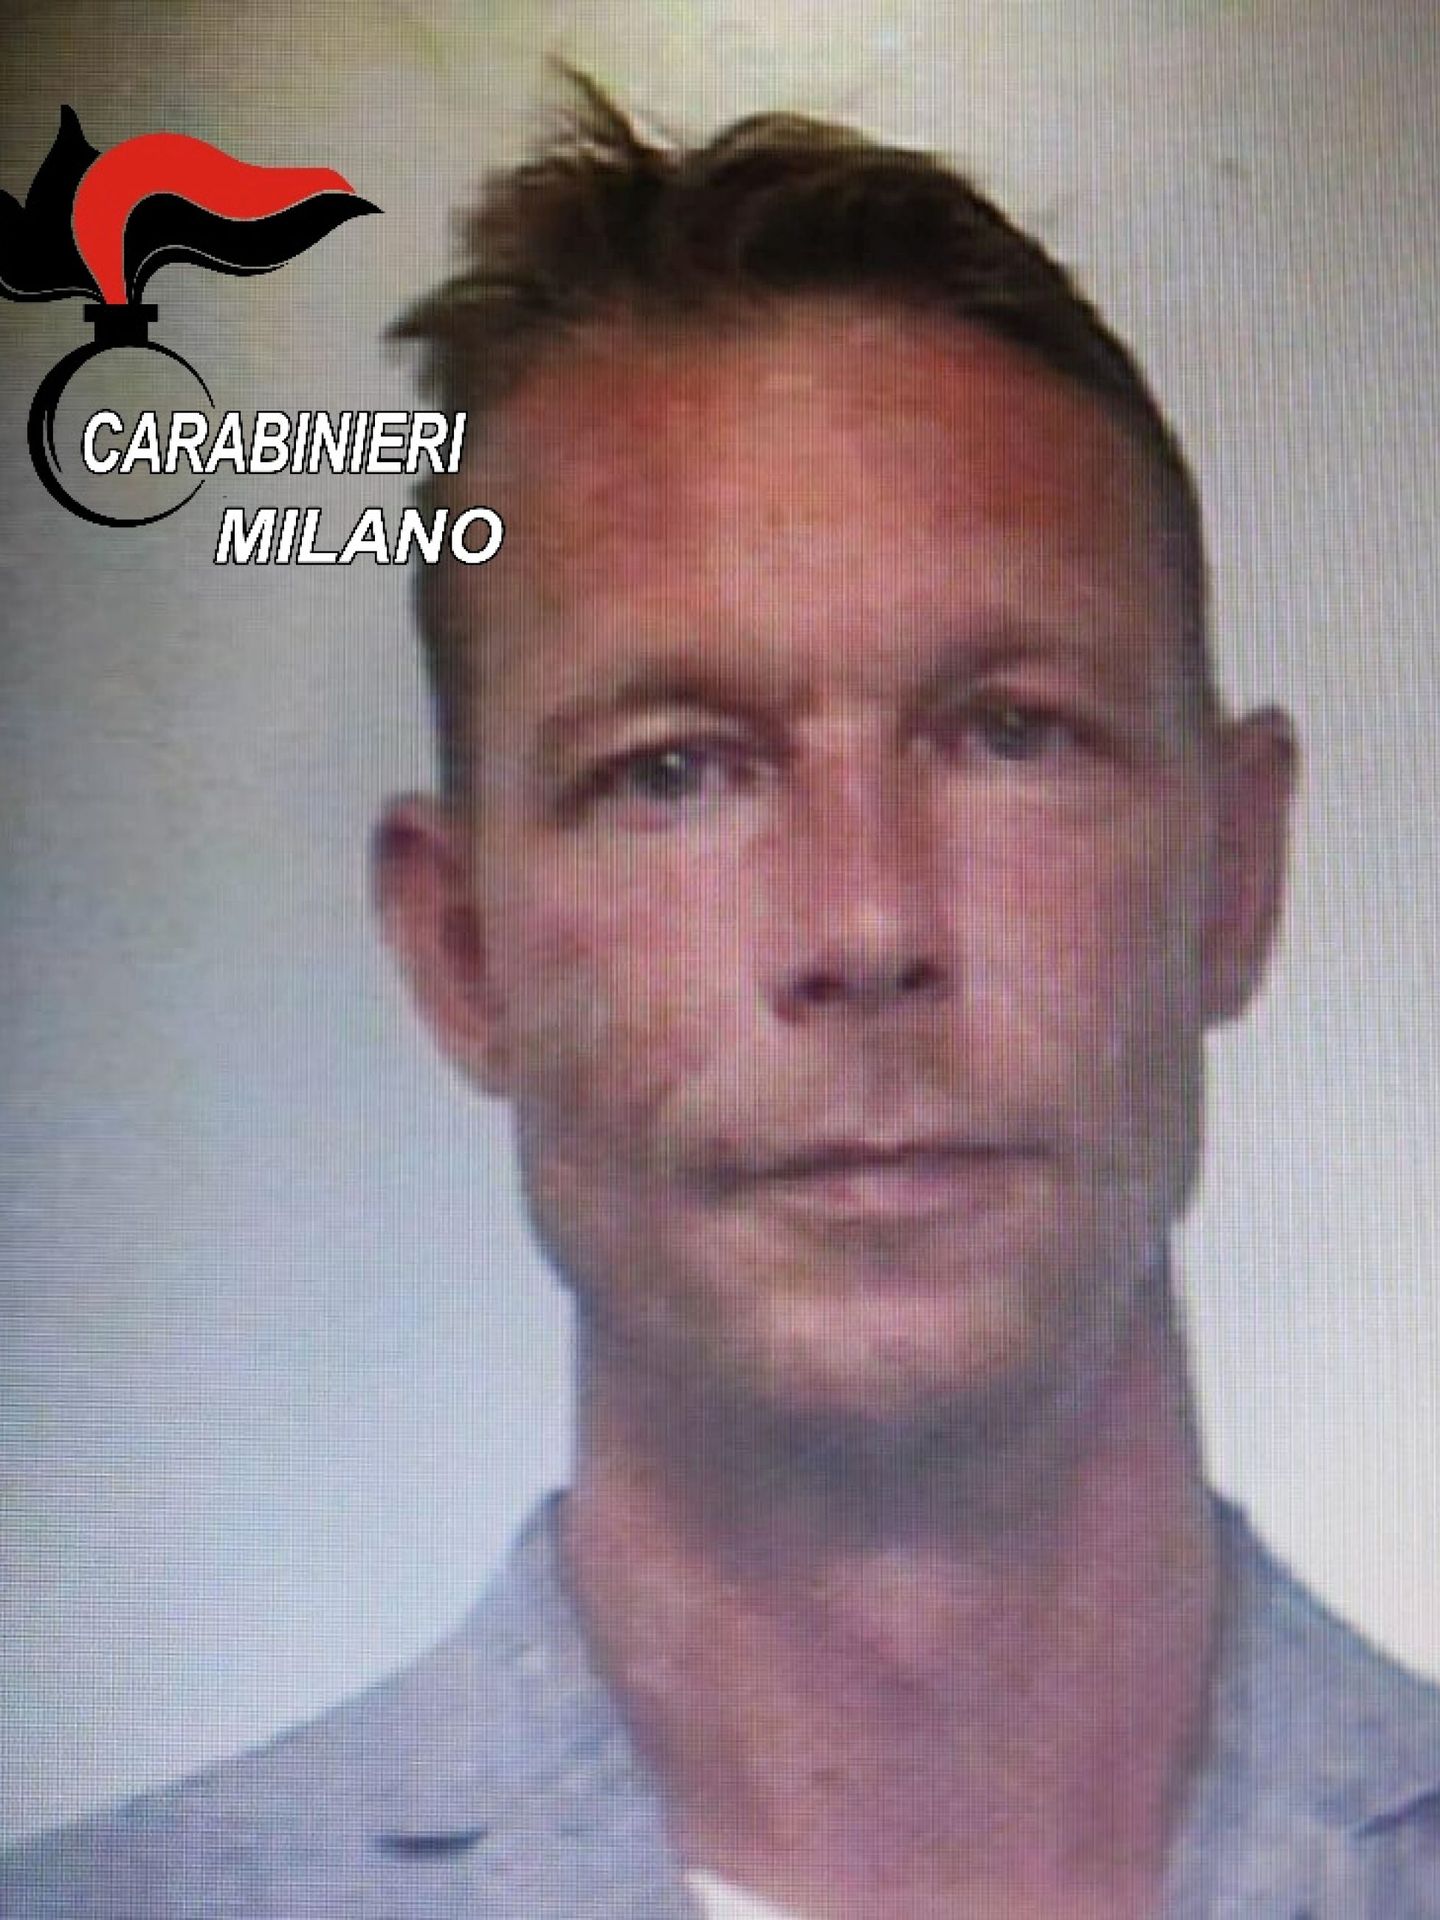 Christian Brueckner, el presunto implicado en la desaparición de Madeleine McCann (Reuters/Carabinieri Milano)